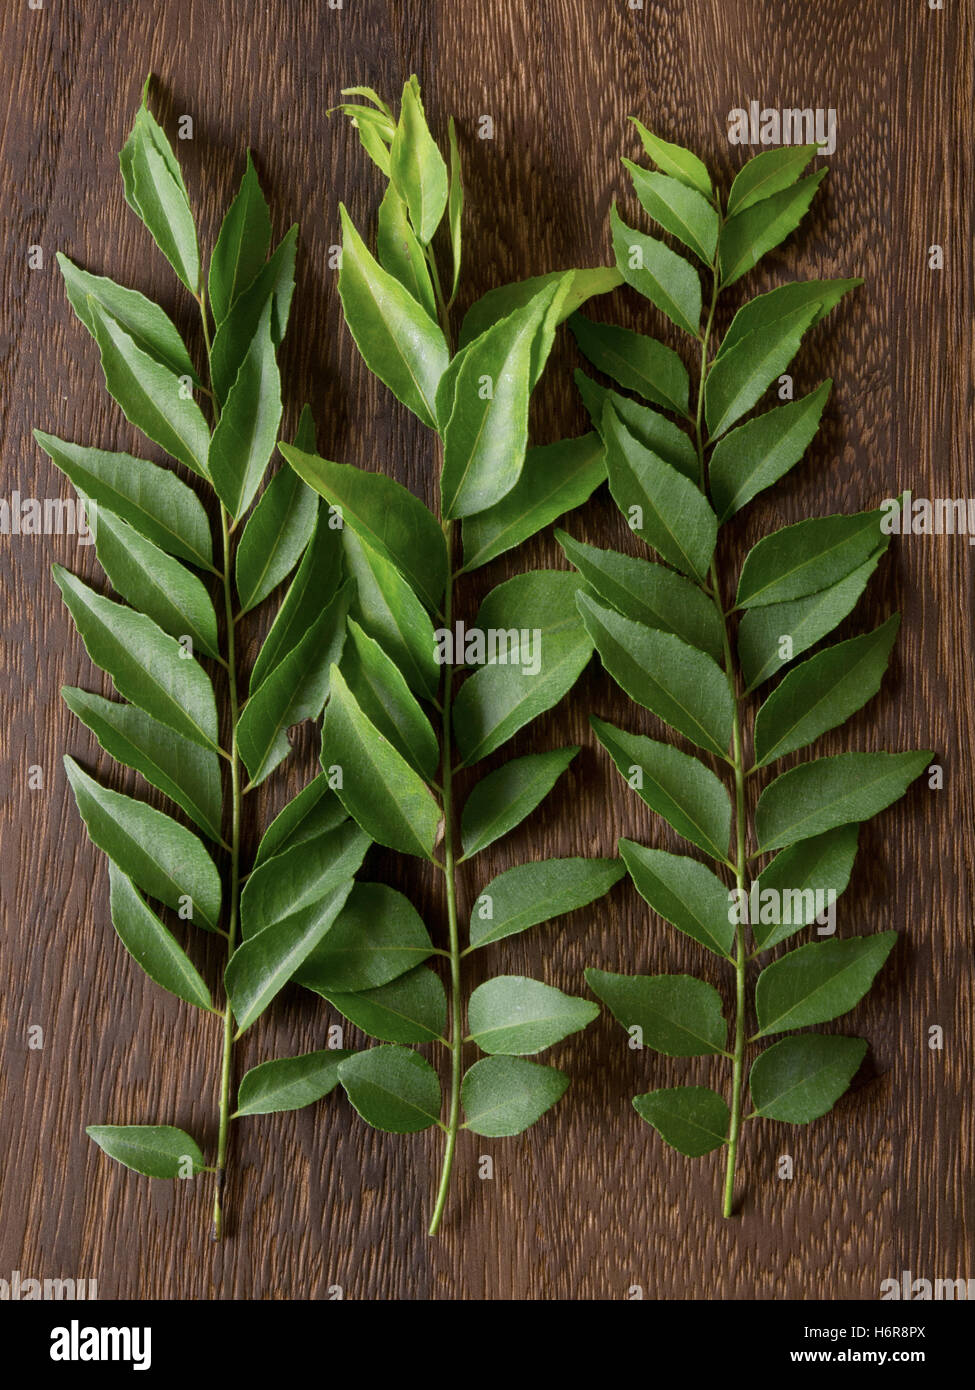 Les feuilles d'épices curry aromatique herbes indiennes ingrédient alimentaire aliment leaf feuillage couleur épices cuisine aromatique laisse libre Banque D'Images